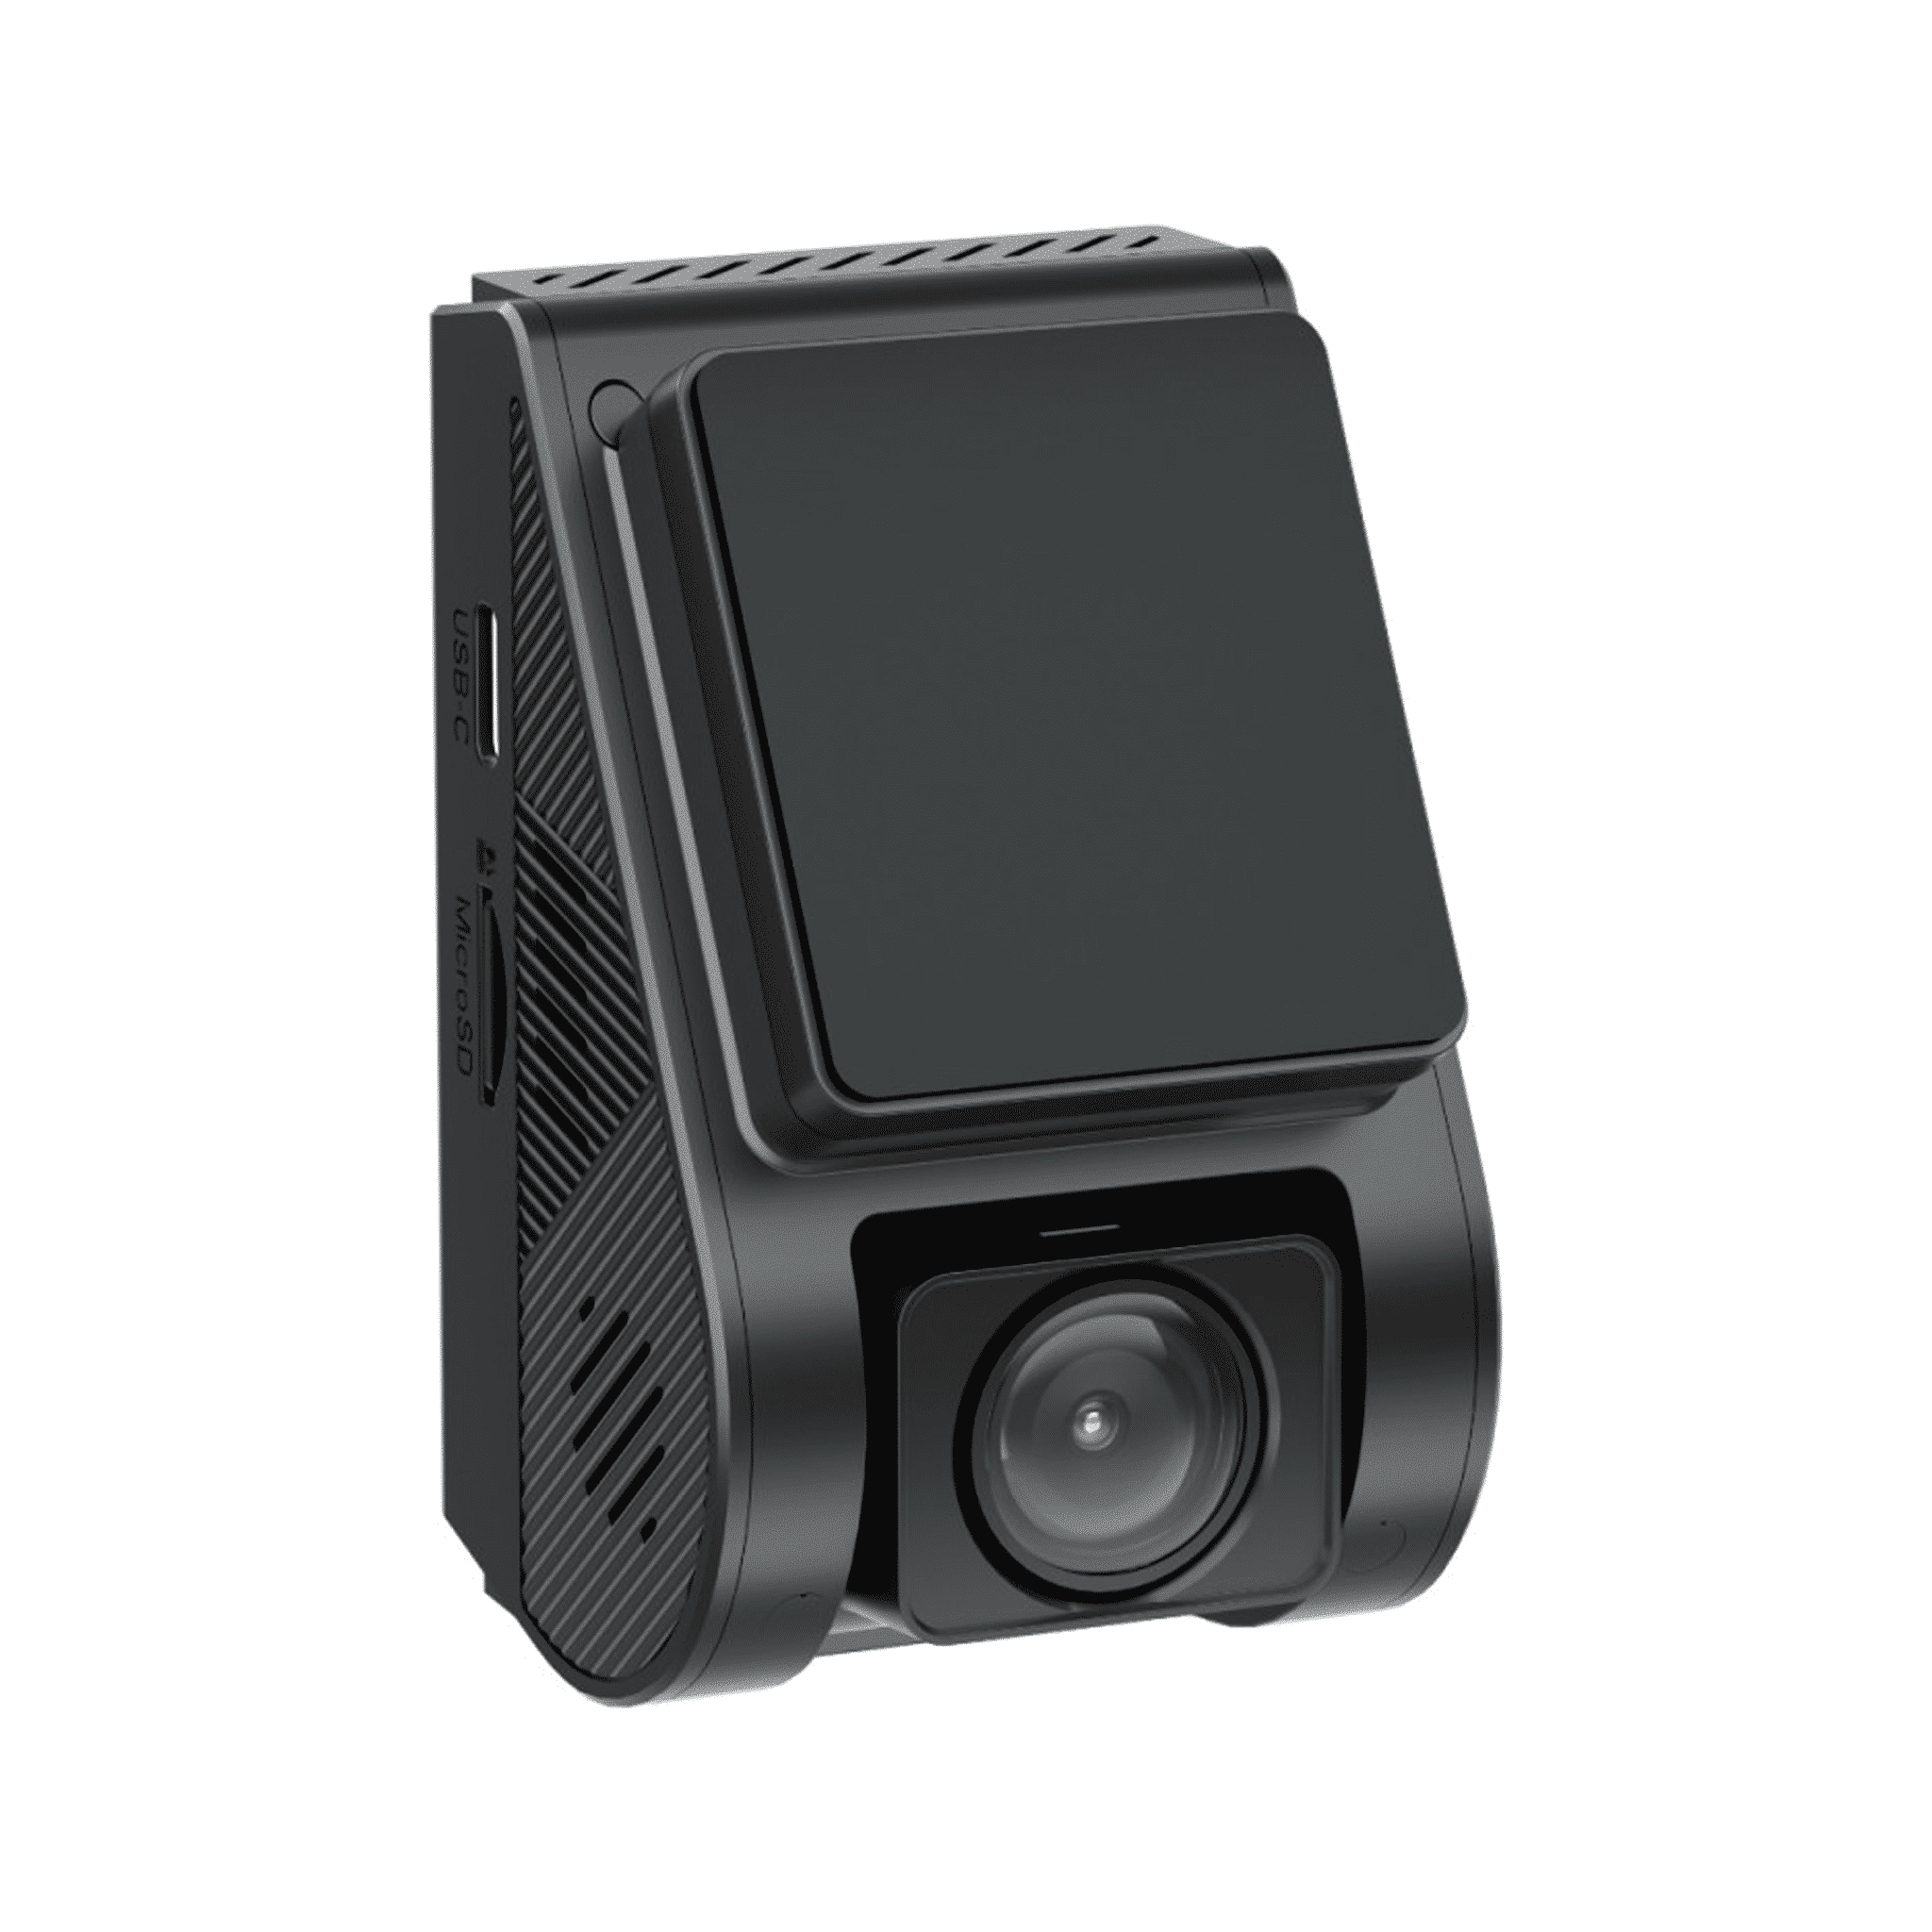 VIOFO A119 MINI 2 1440p Dashcam | with accessories